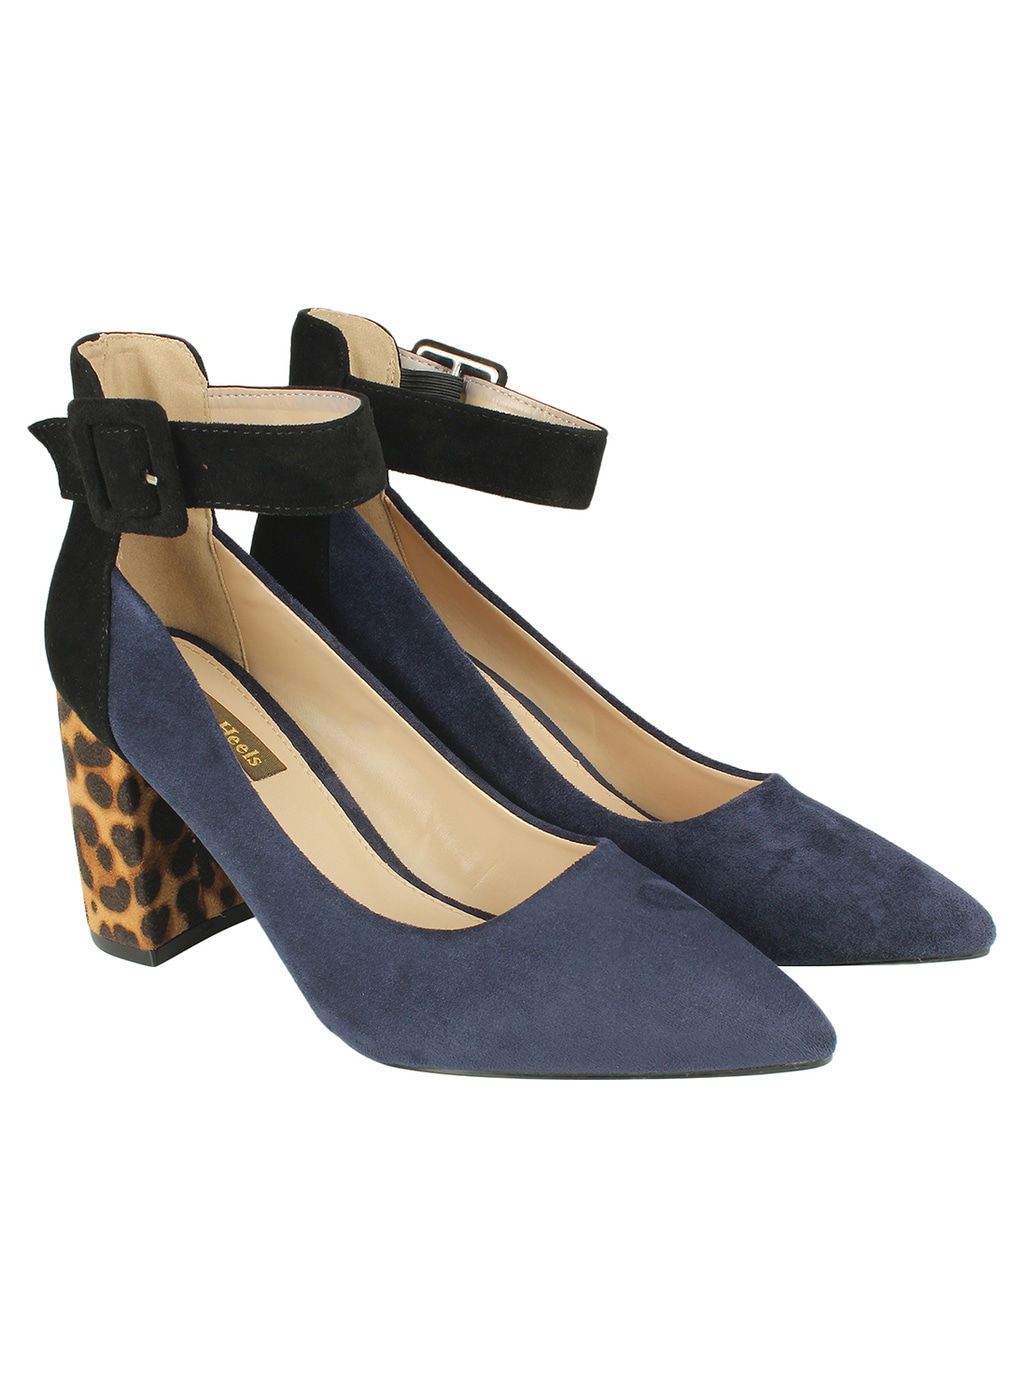 navy blue heels women's shoes